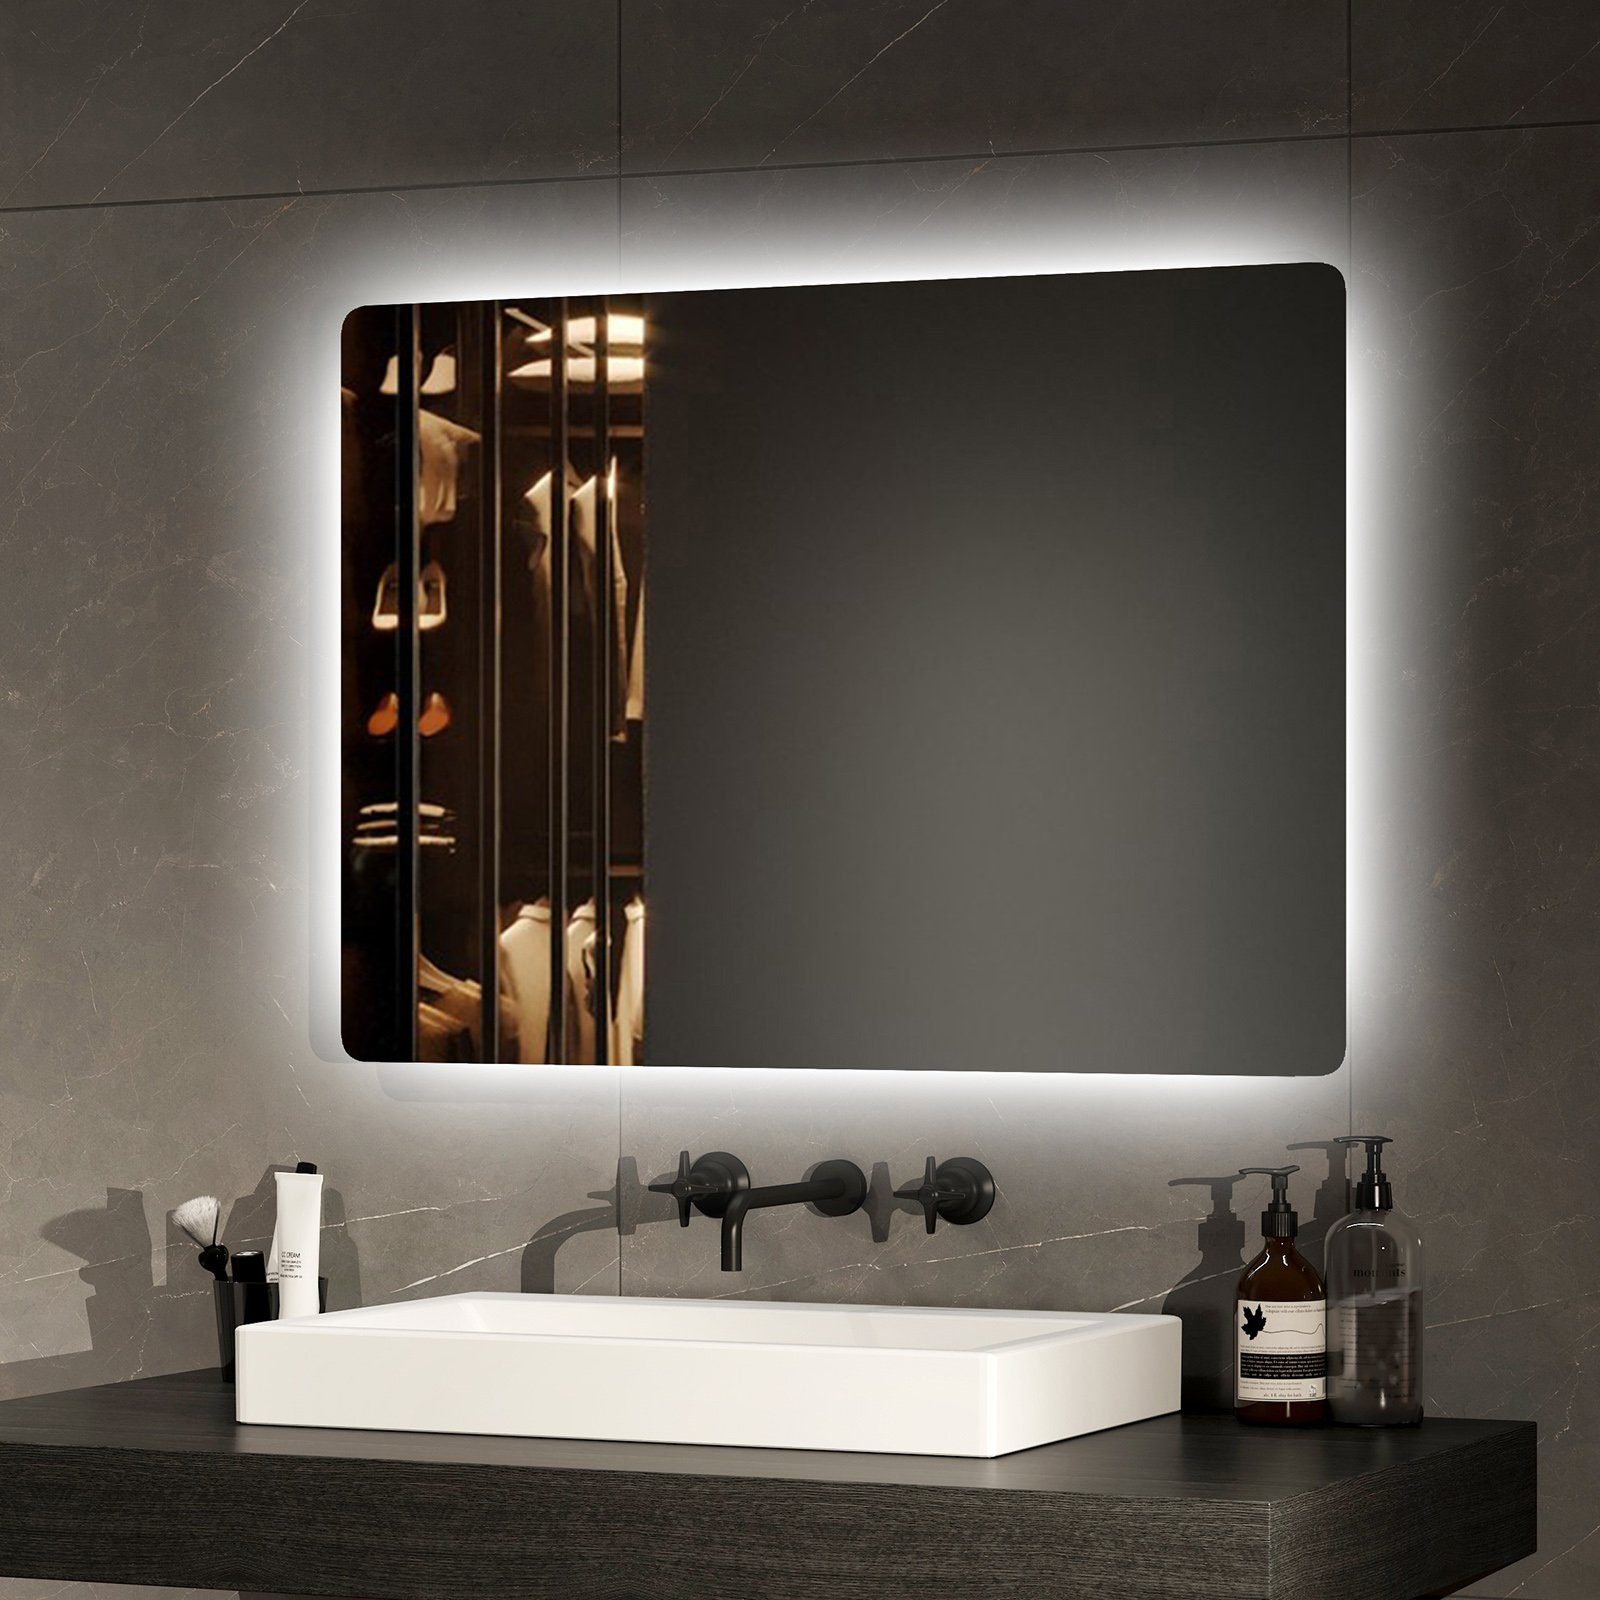 EMKE Badspiegel Badspiegel Badezimmerspiegel Spiegel mit LED Beleuchtung,  Kaltweißes Licht 6500K Einfache Badspiegel 70-80cm